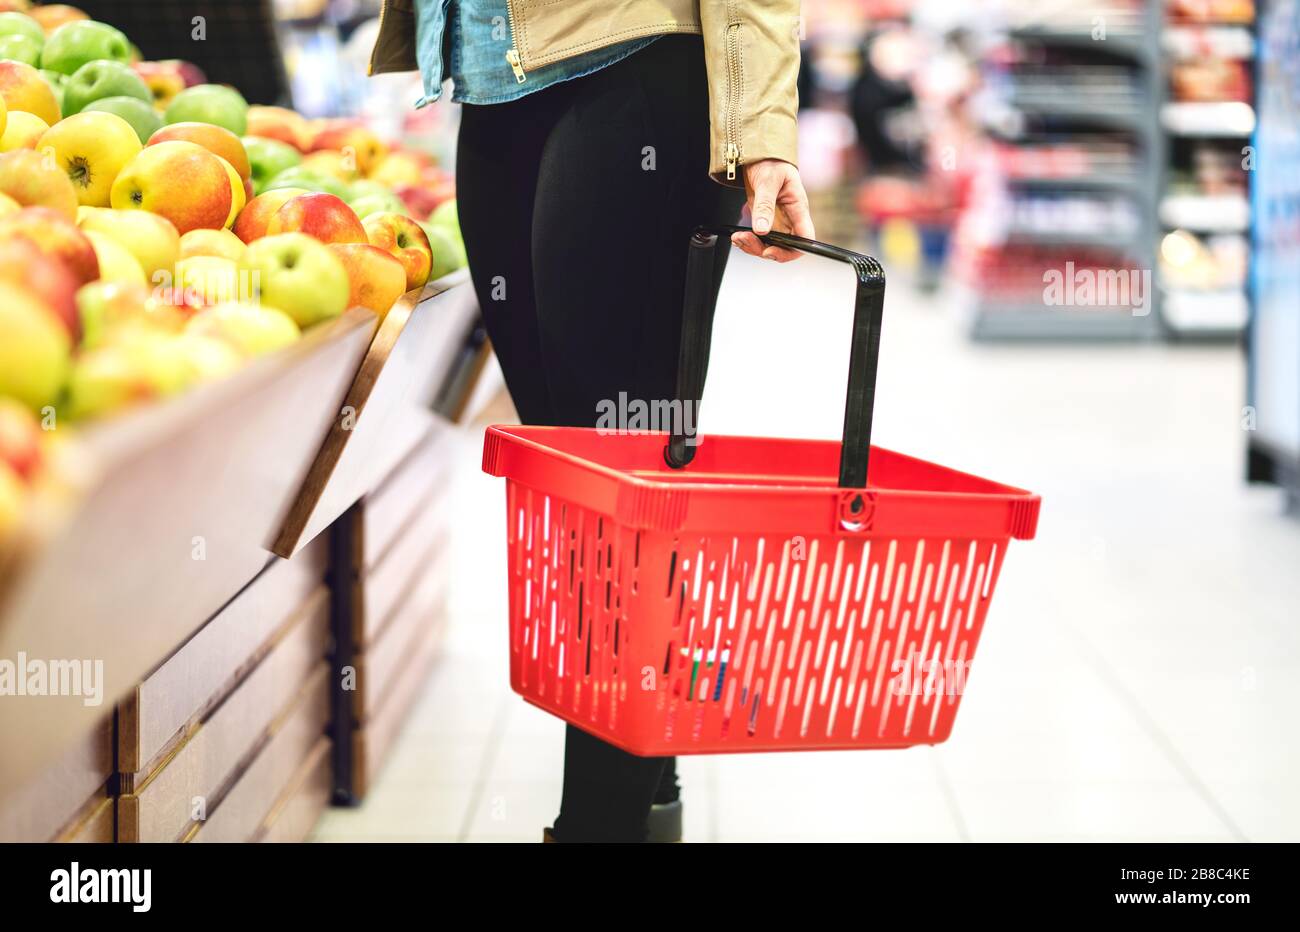 Konzept für Einzelhandel, Verkauf und Konsumerismus. Kunde im Supermarkt Gemüse- und Obstbereich, der gesunde Lebensmittel wählt. Frau mit Warenkorb. Stockfoto